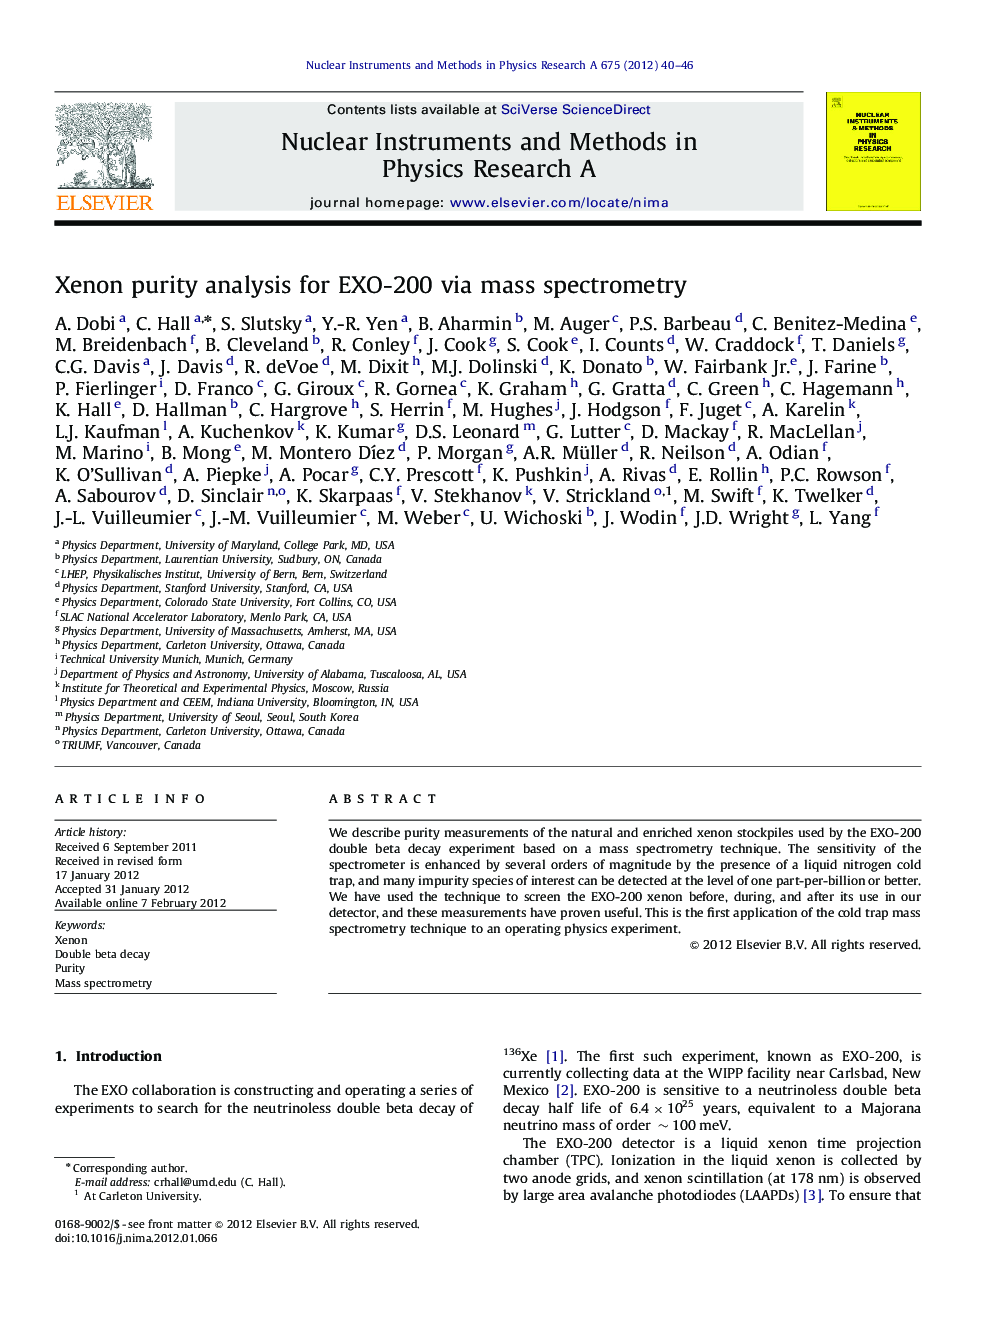 Xenon purity analysis for EXO-200 via mass spectrometry